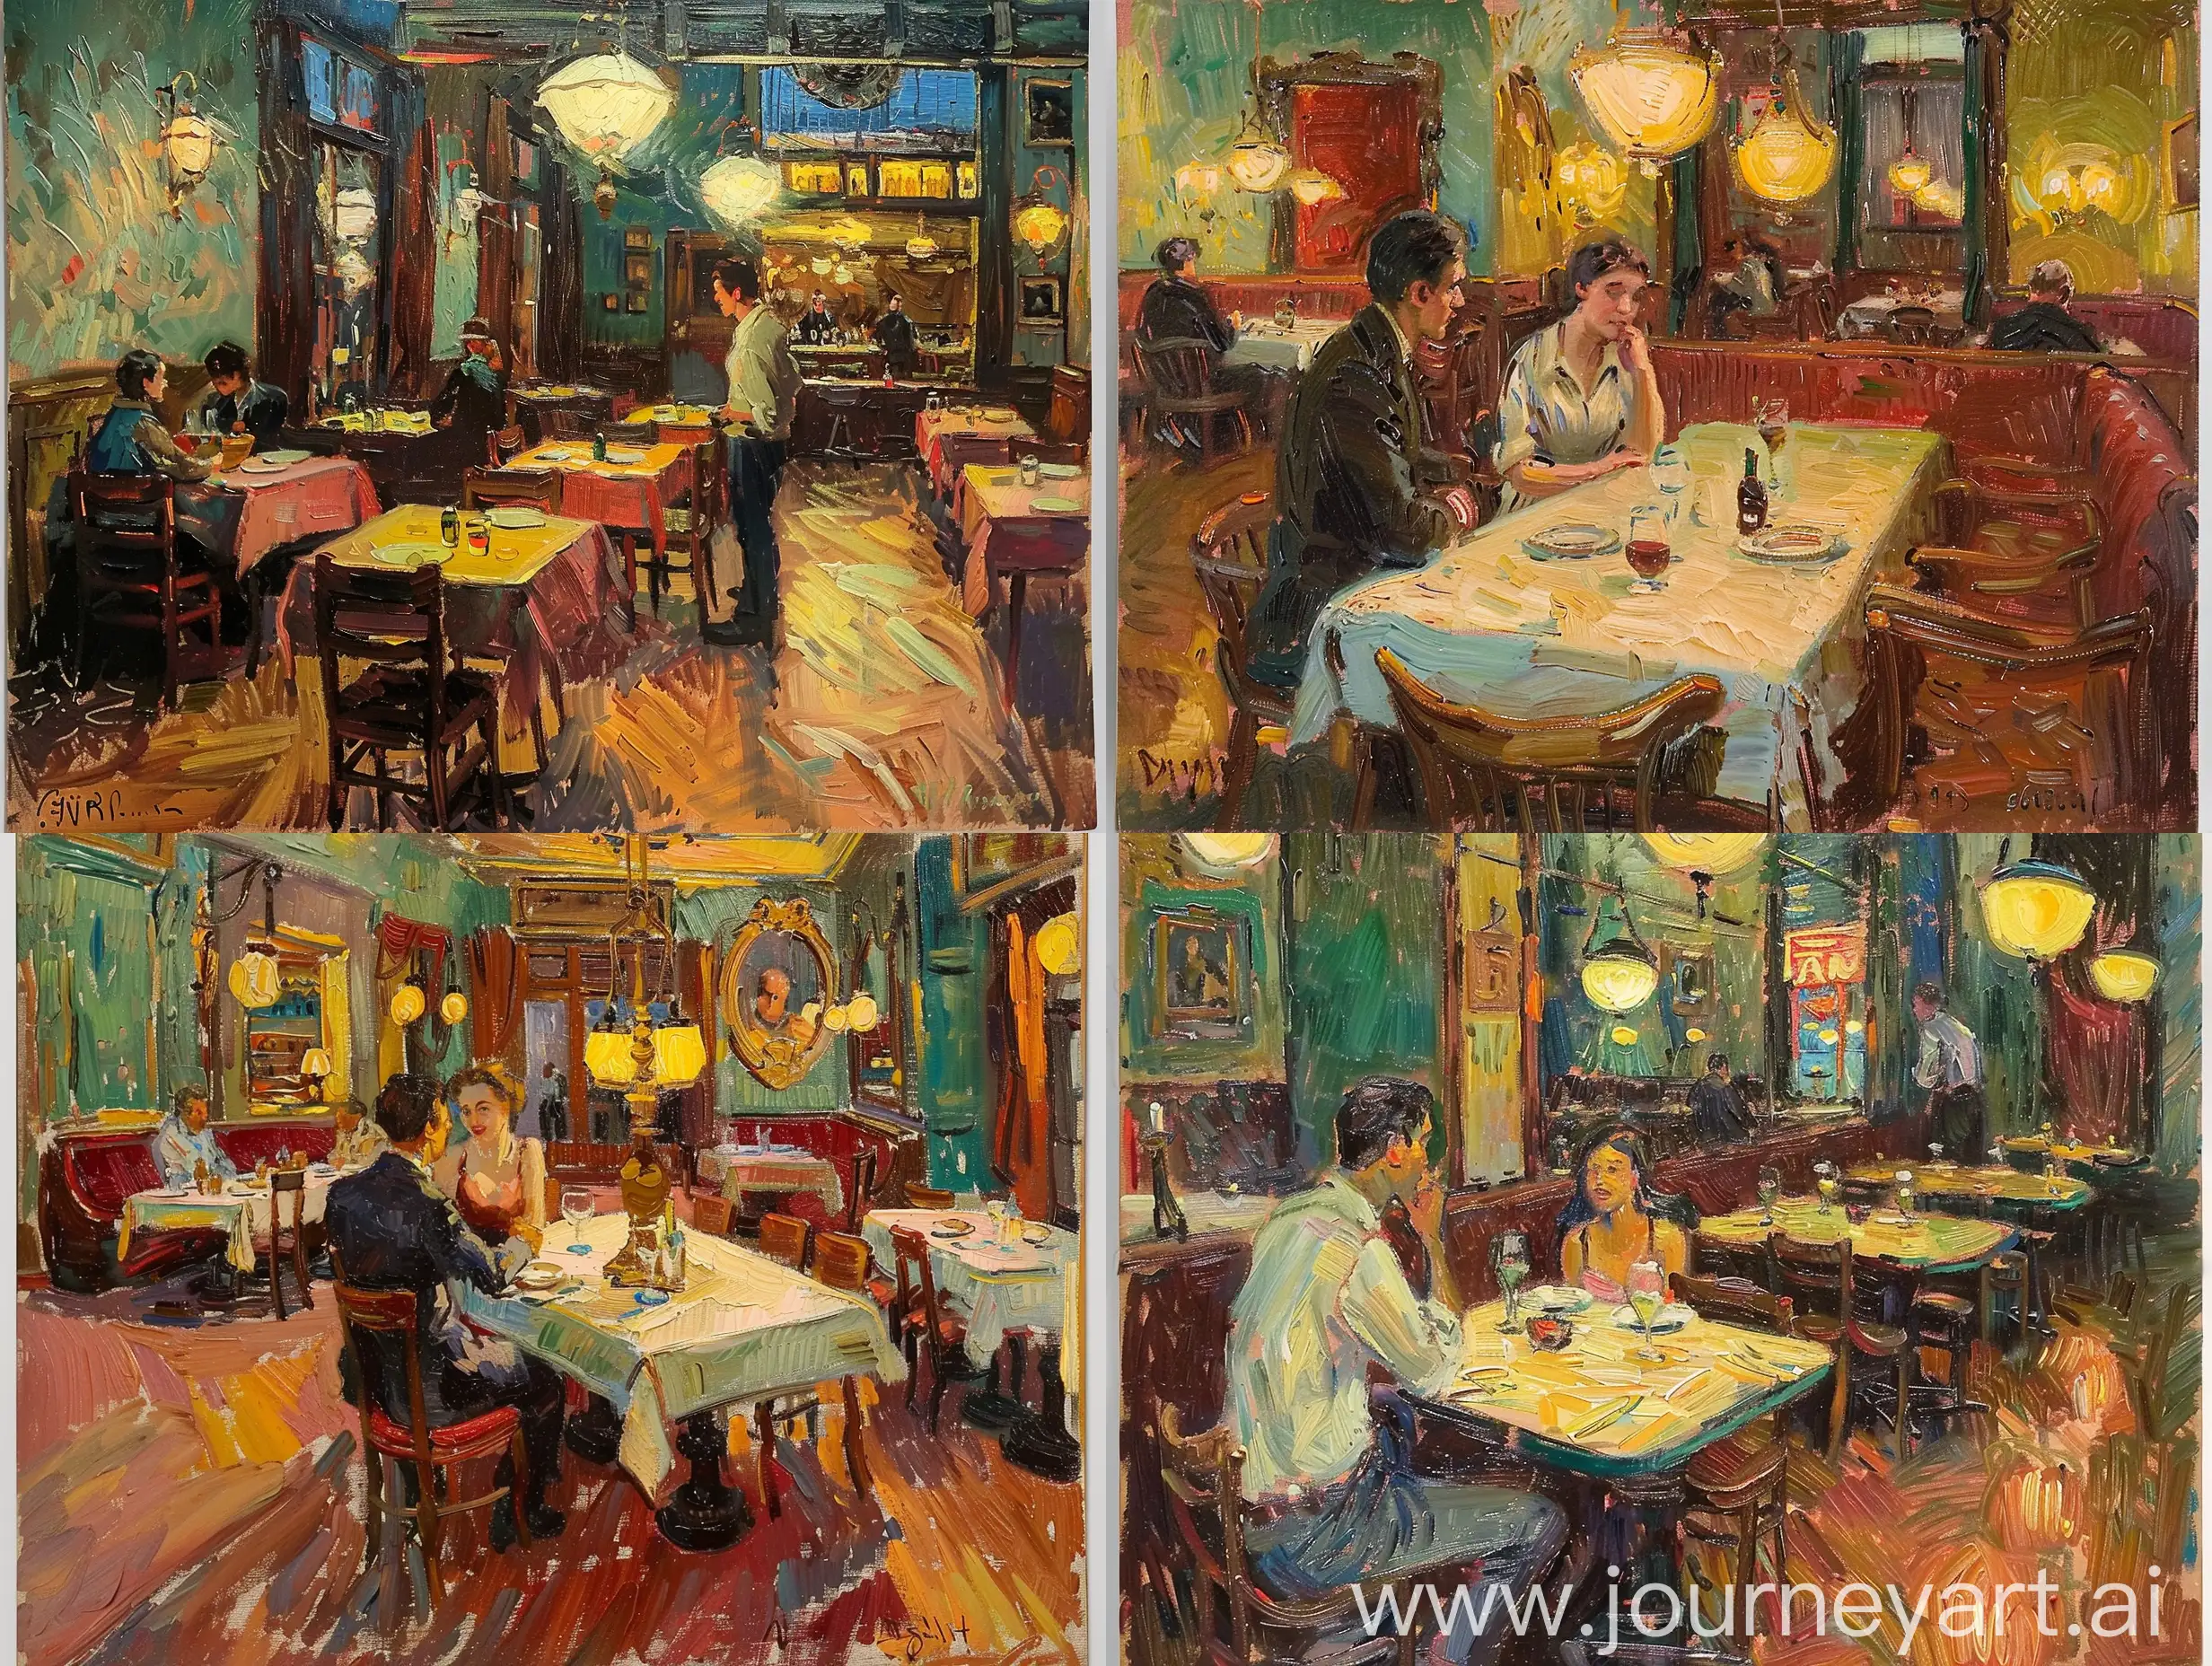 Romantic-Couple-Dining-Together-in-Elegant-Restaurant-Interior